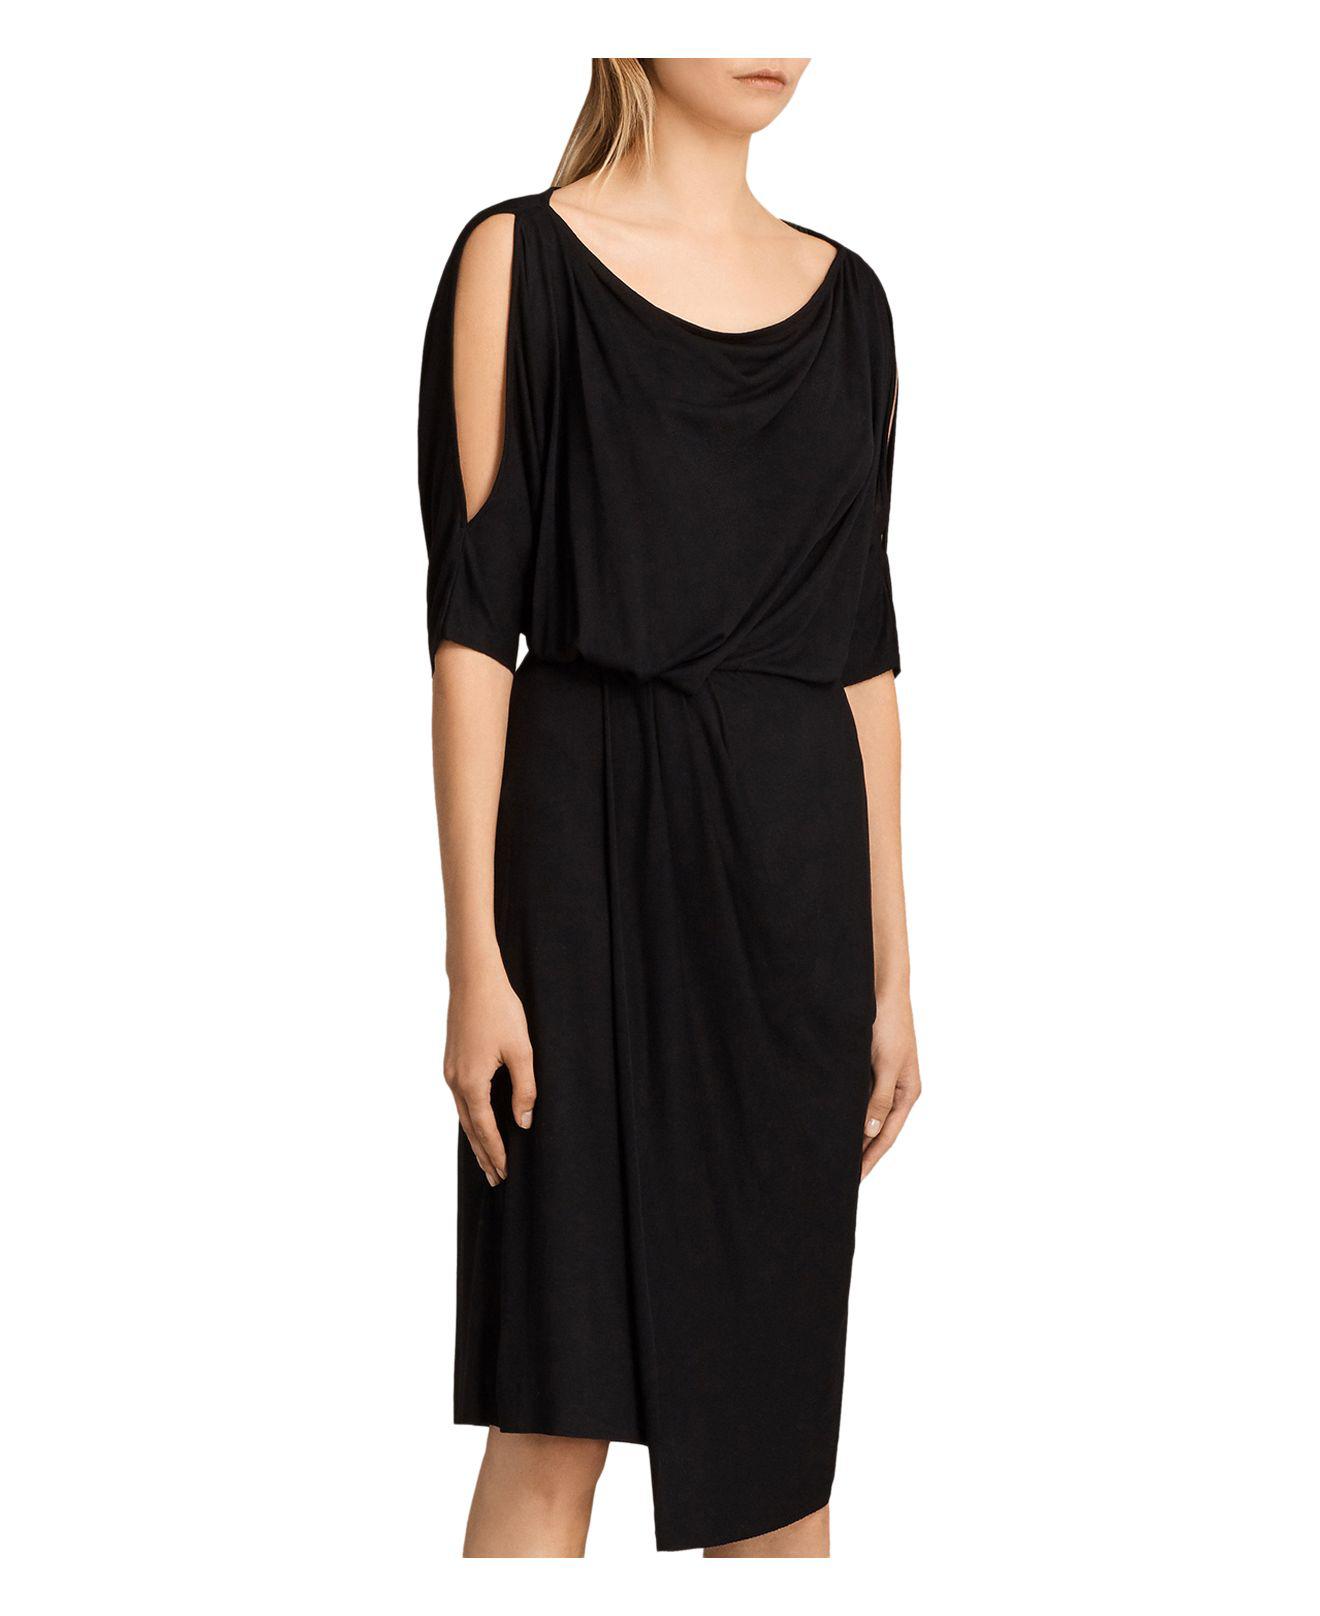 AllSaints Sina Cold-shoulder Dress in Black - Lyst